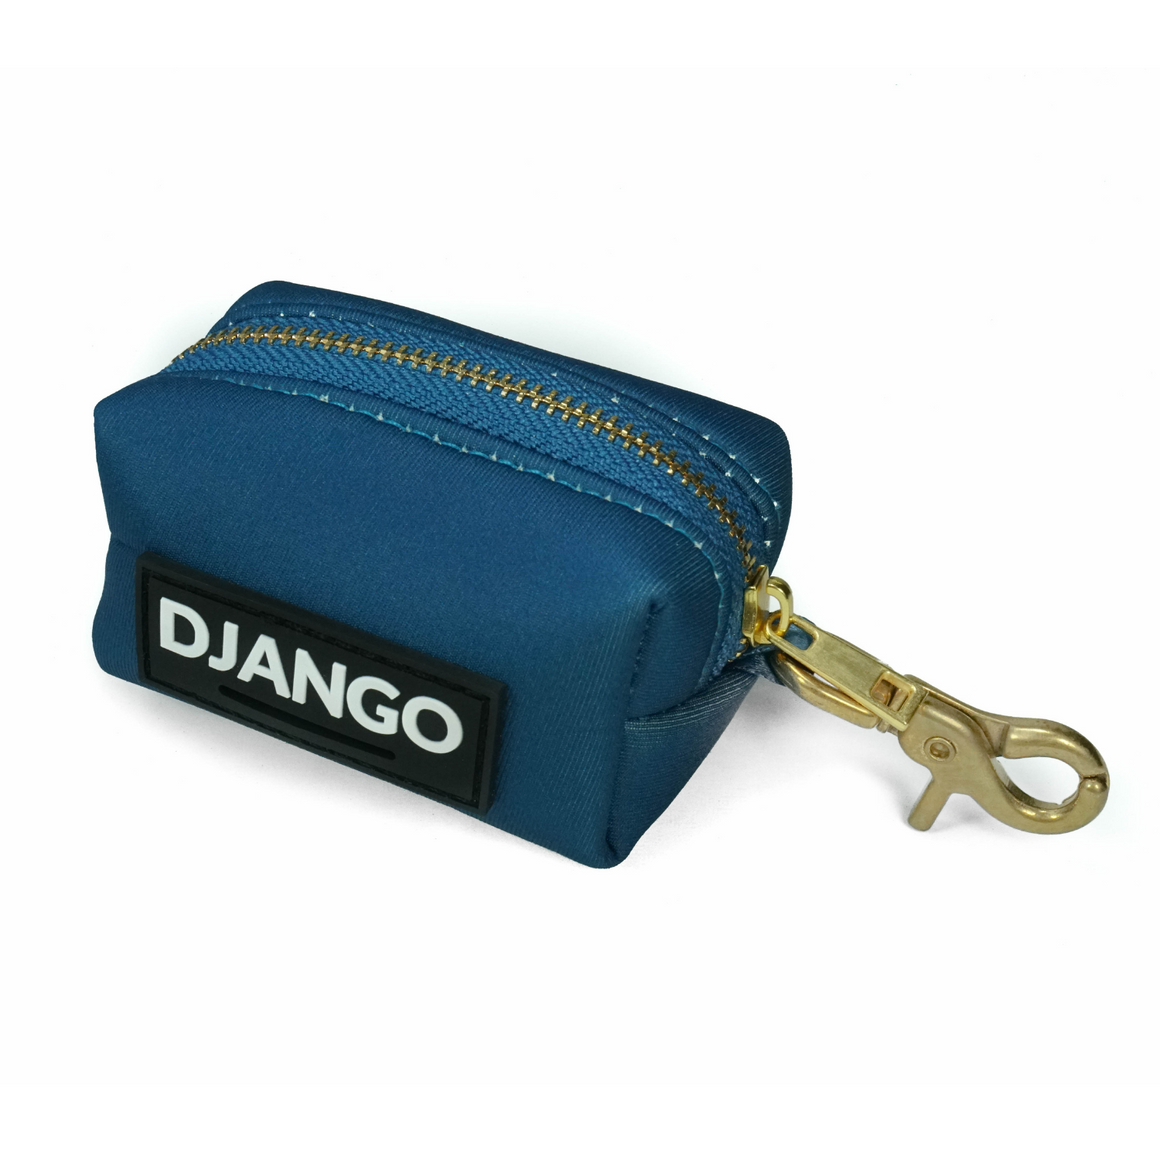 DJANGO Dog Waste Bag Holder - Chic and classy poop bag holder for dogs - Indigo Blue neoprene with solid brass hardware - djangobrand.com